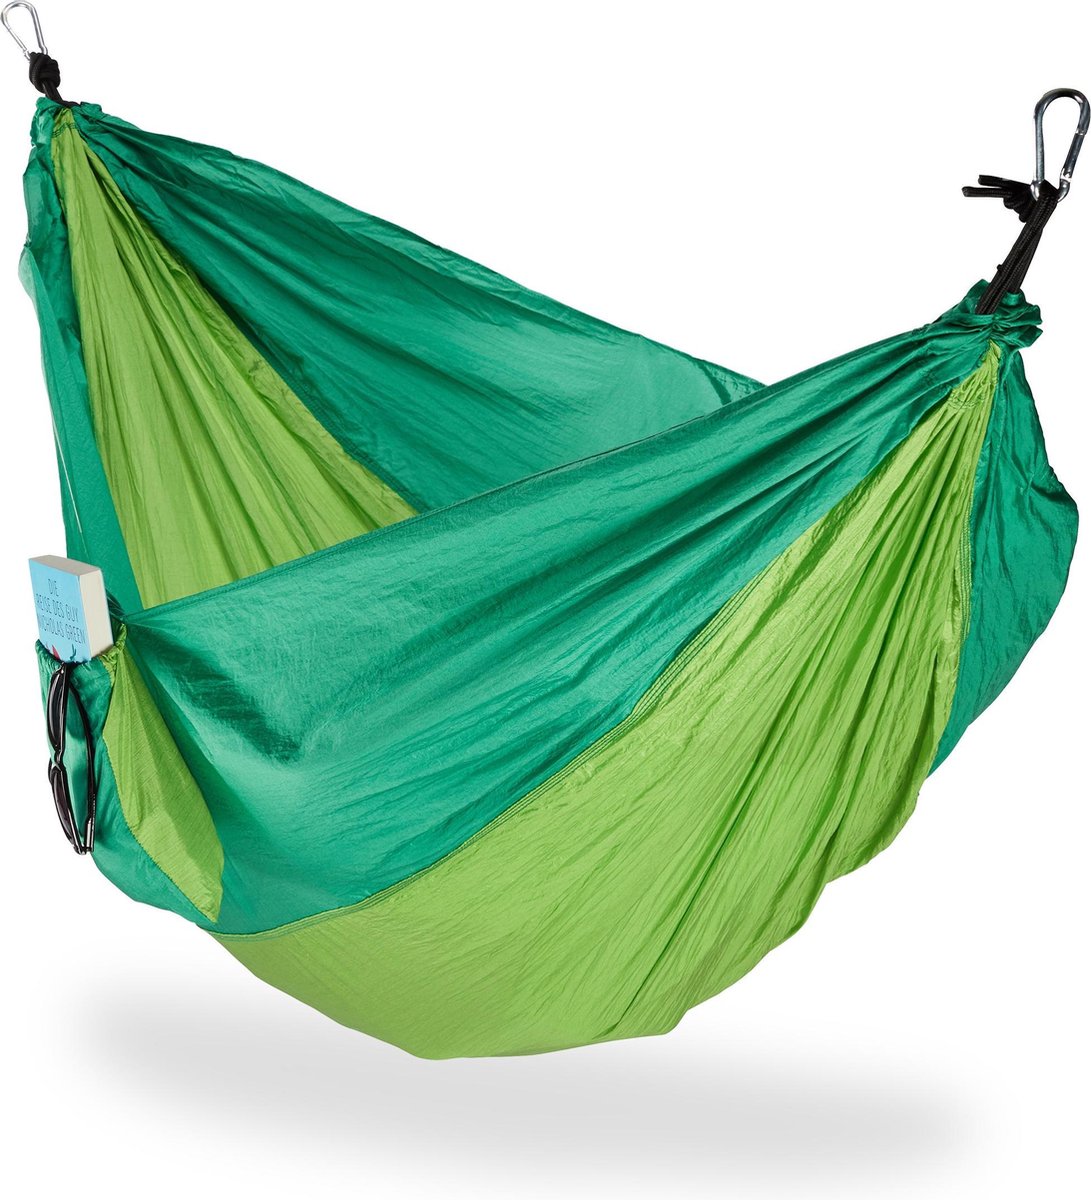 Relaxdays hangmat outdoor XXL hang mat 2 personen extreem licht camping tot 200 kg lichtgroen